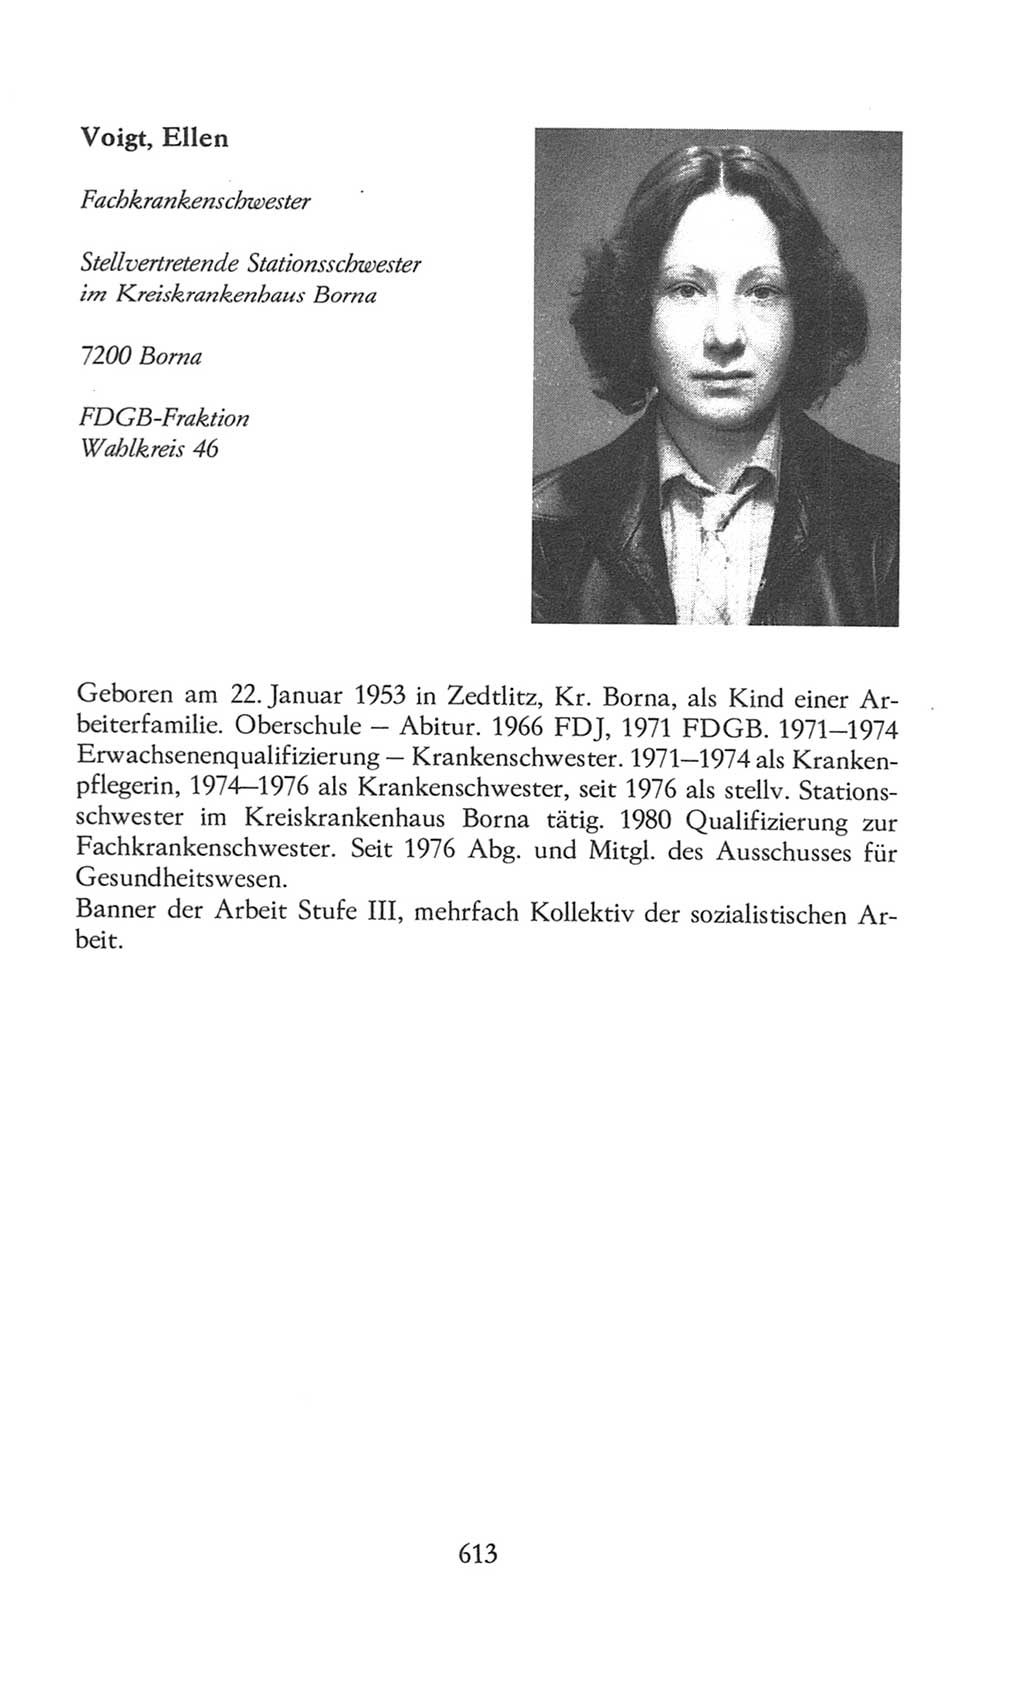 Volkskammer (VK) der Deutschen Demokratischen Republik (DDR), 8. Wahlperiode 1981-1986, Seite 613 (VK. DDR 8. WP. 1981-1986, S. 613)